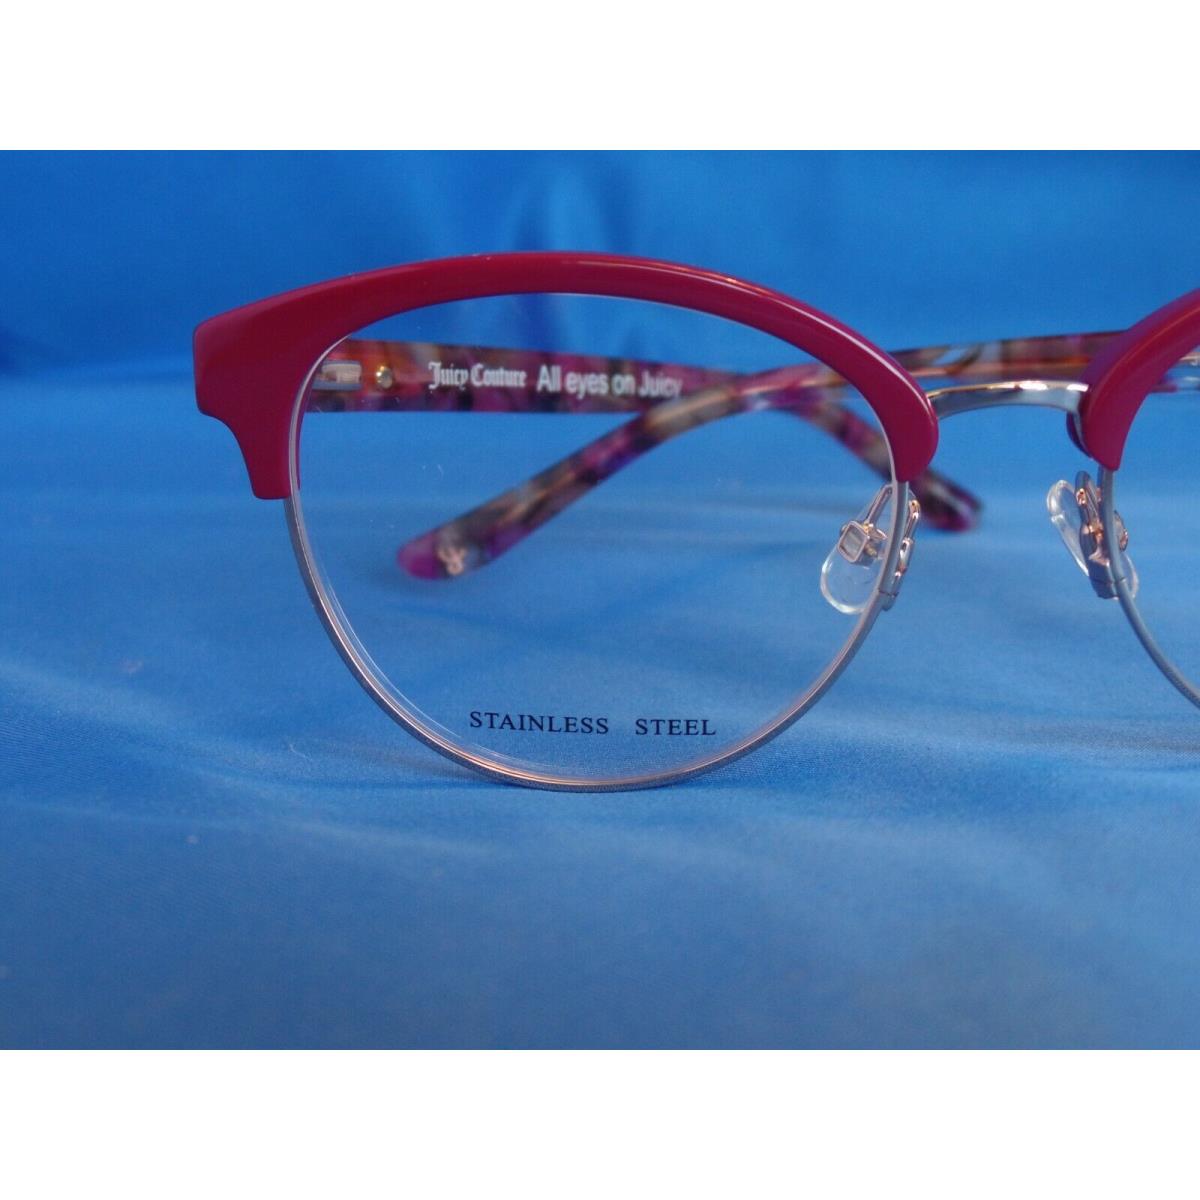 Juicy Couture eyeglasses  - Burgundy Opal , Burgundy Opal Frame 2